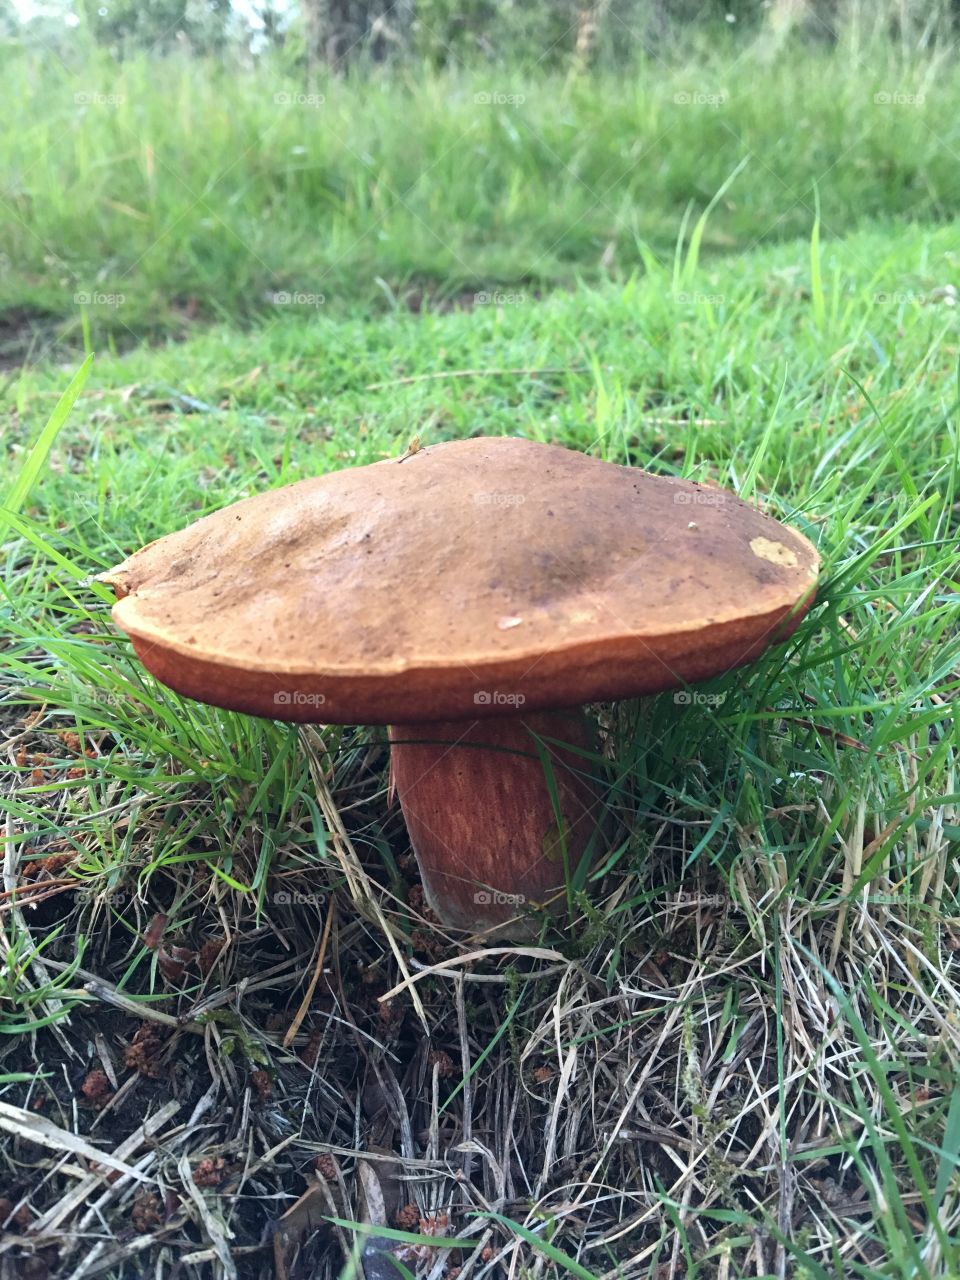 Huge mushroom 